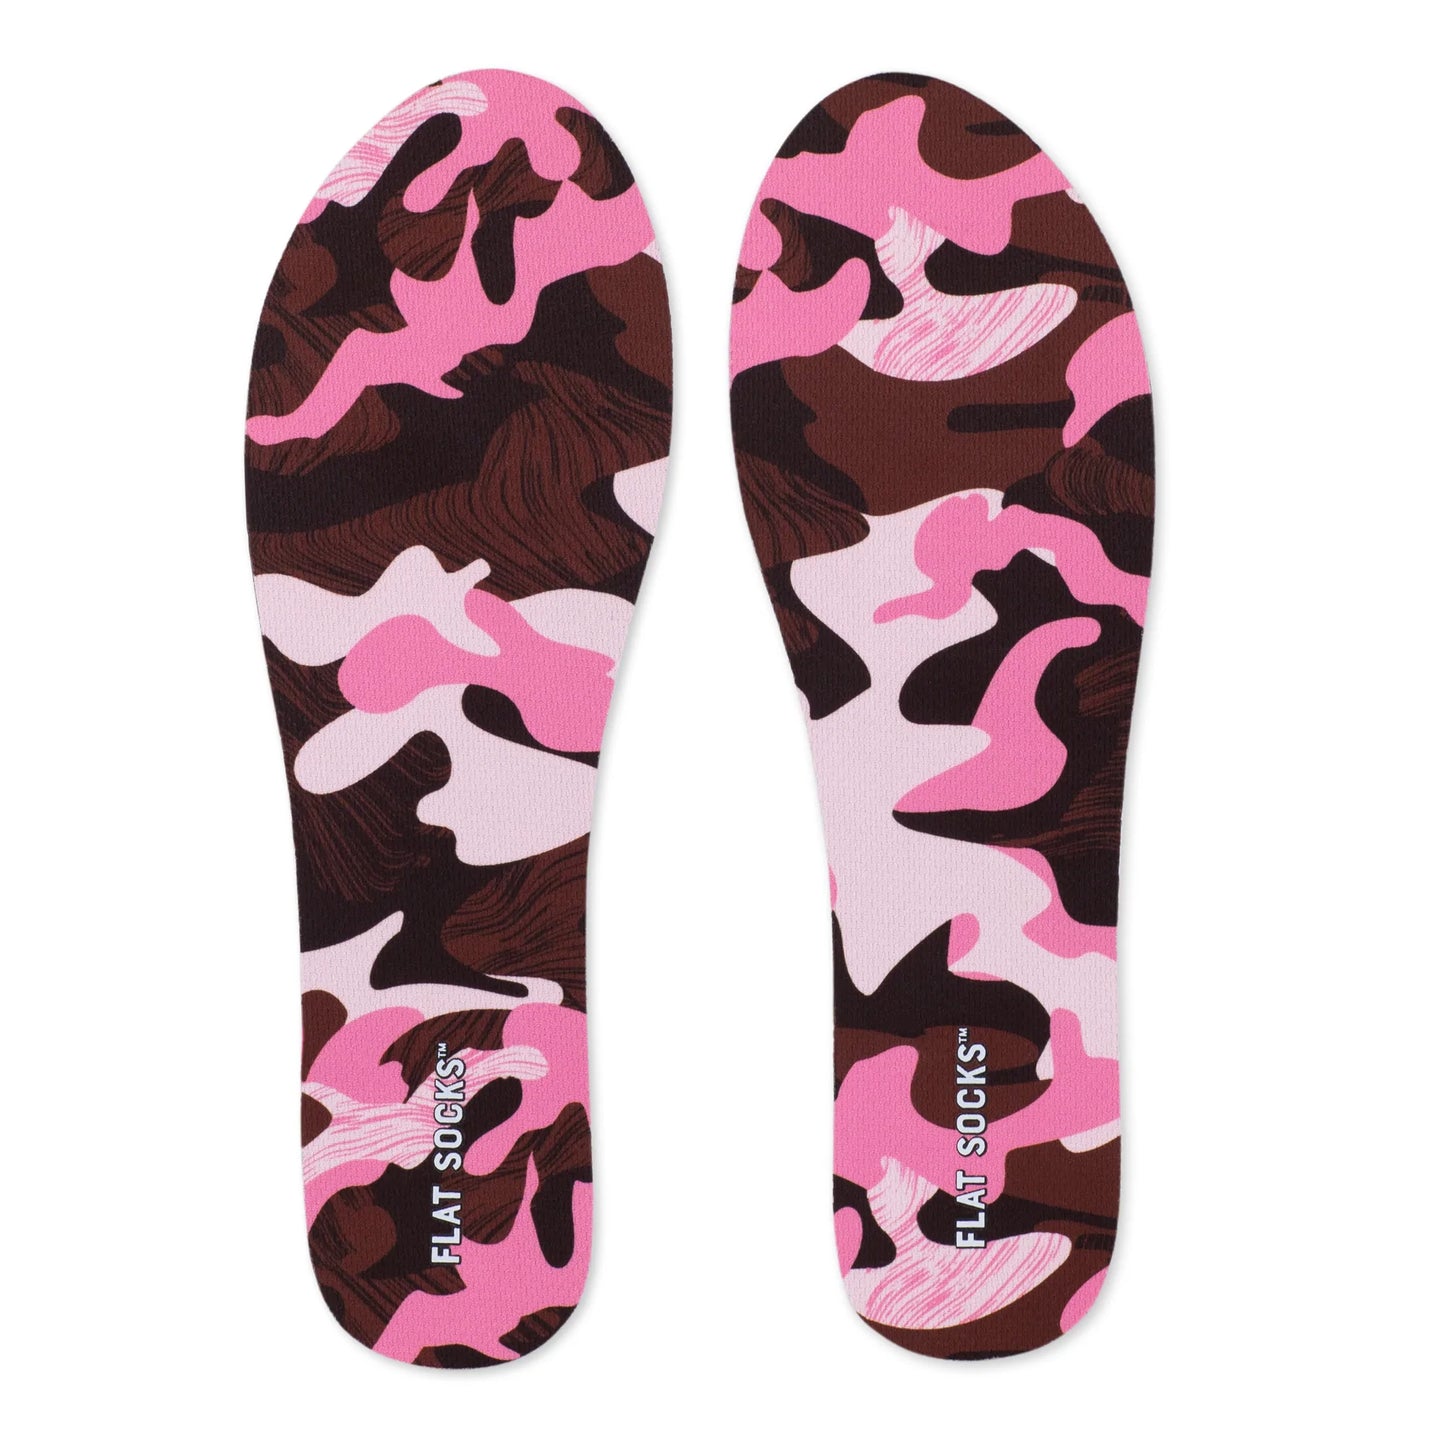 Pink Camo Flat Socks - Small